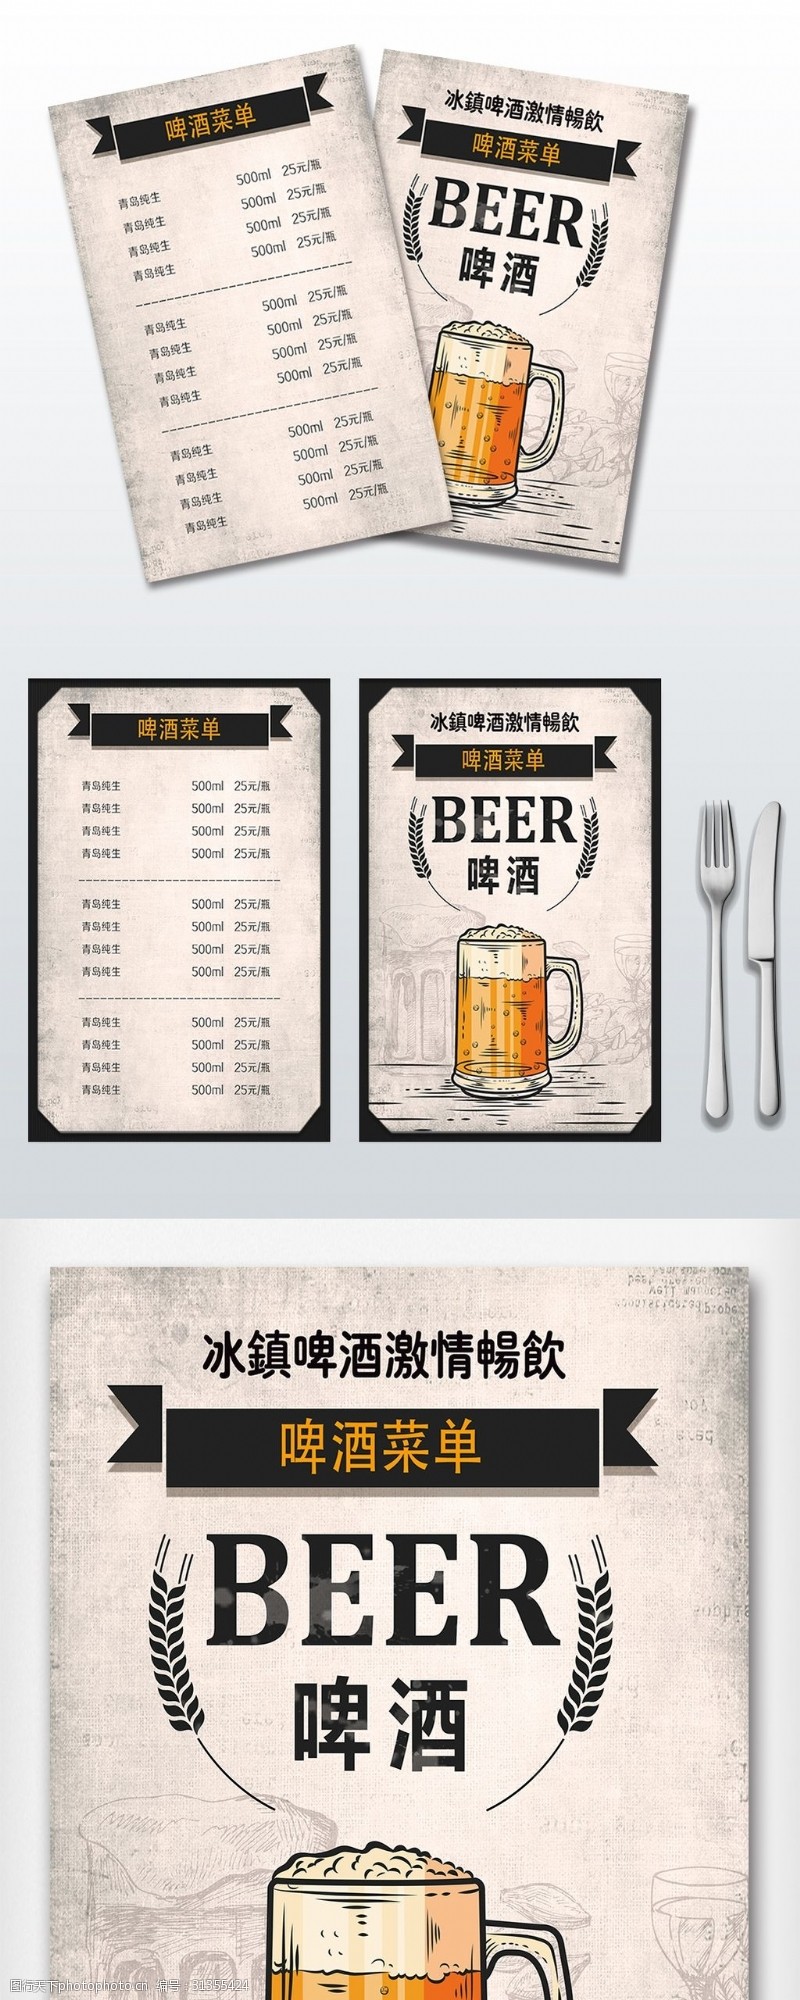 菜单模板高端创意啤酒菜单设计素材